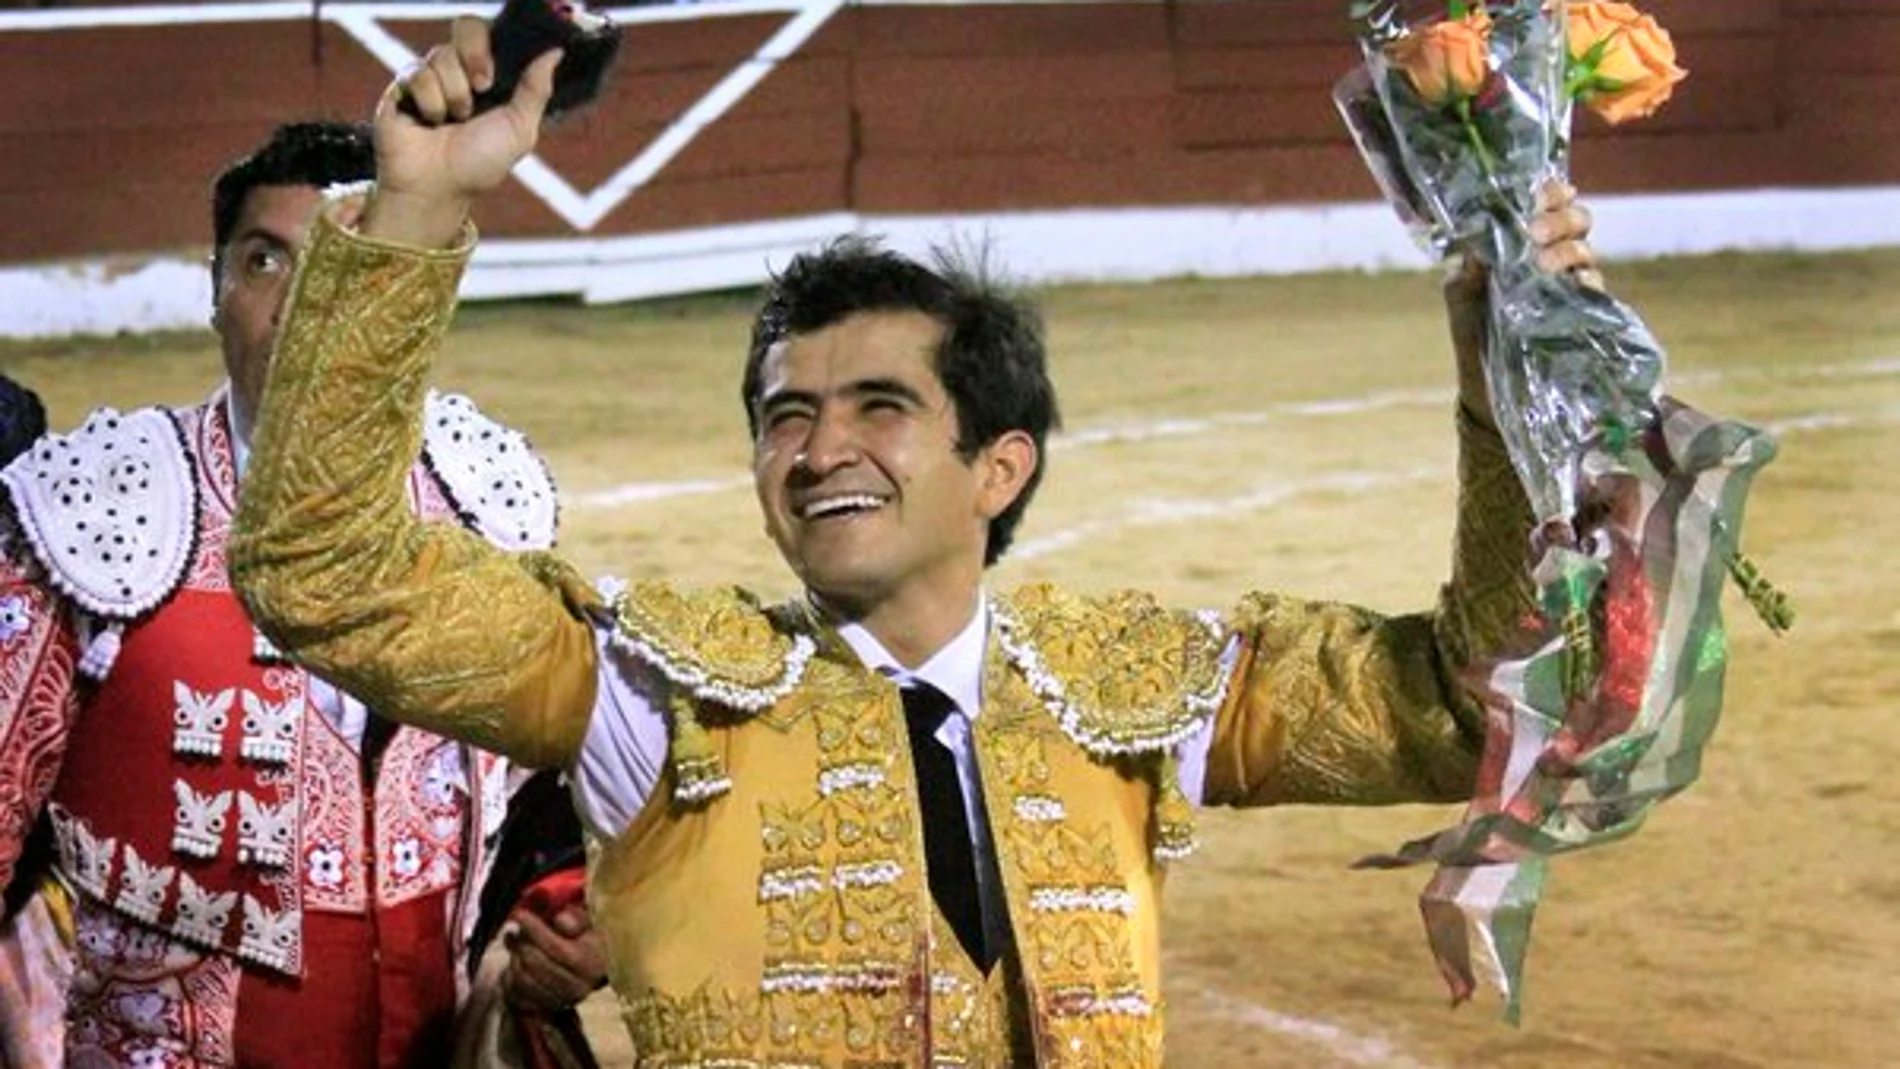 Joselito Adame paseó el único trofeo del festejo en el último toro de la tarde